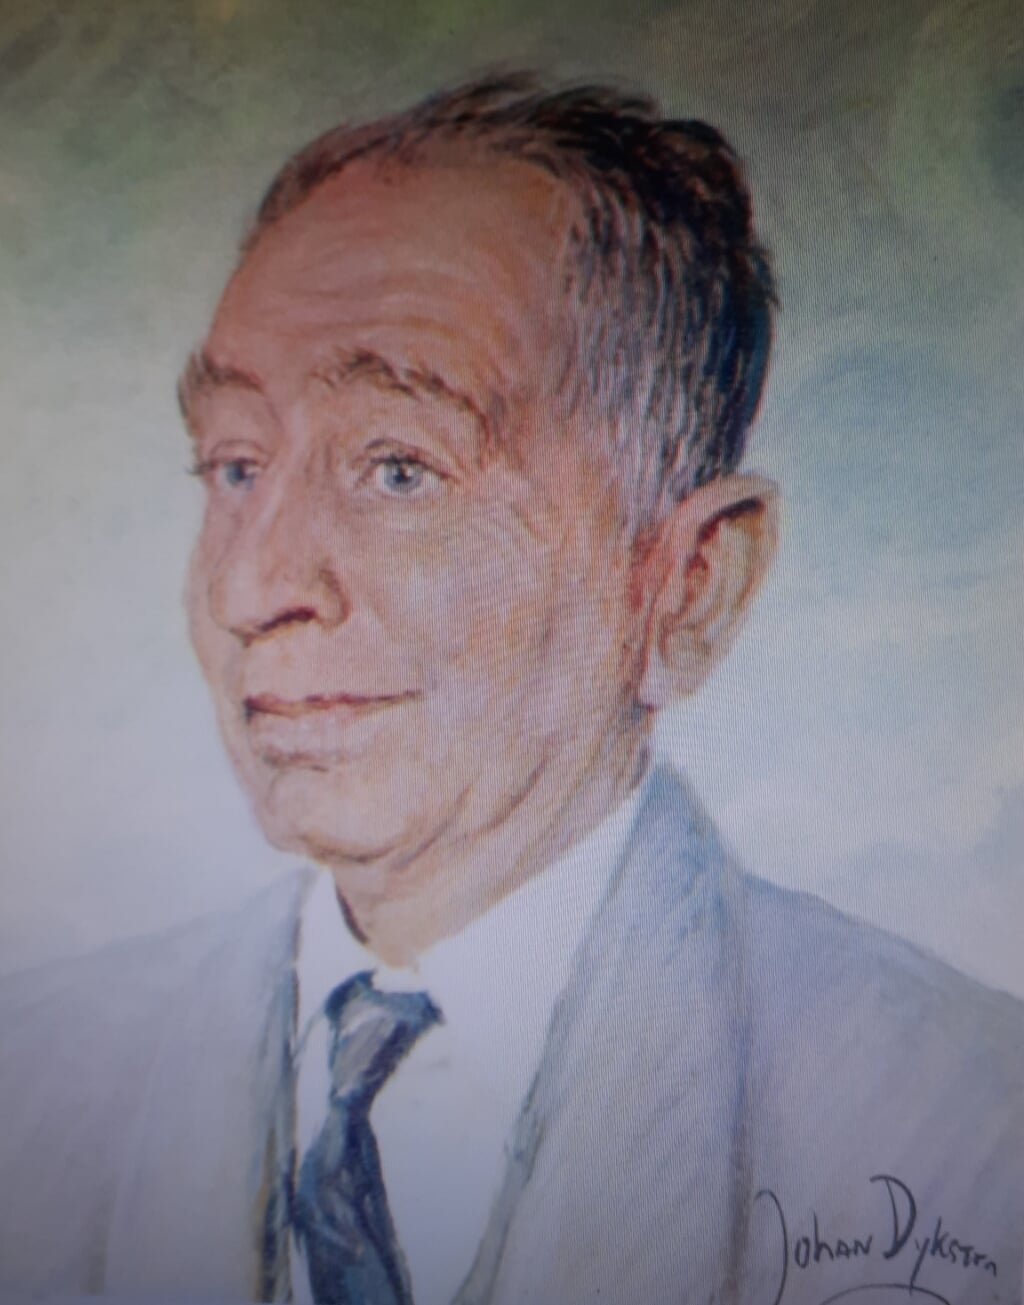  Een portret van Johan van Veen gemaakt door de Groningse kunstenaar Johan Dijkstra.